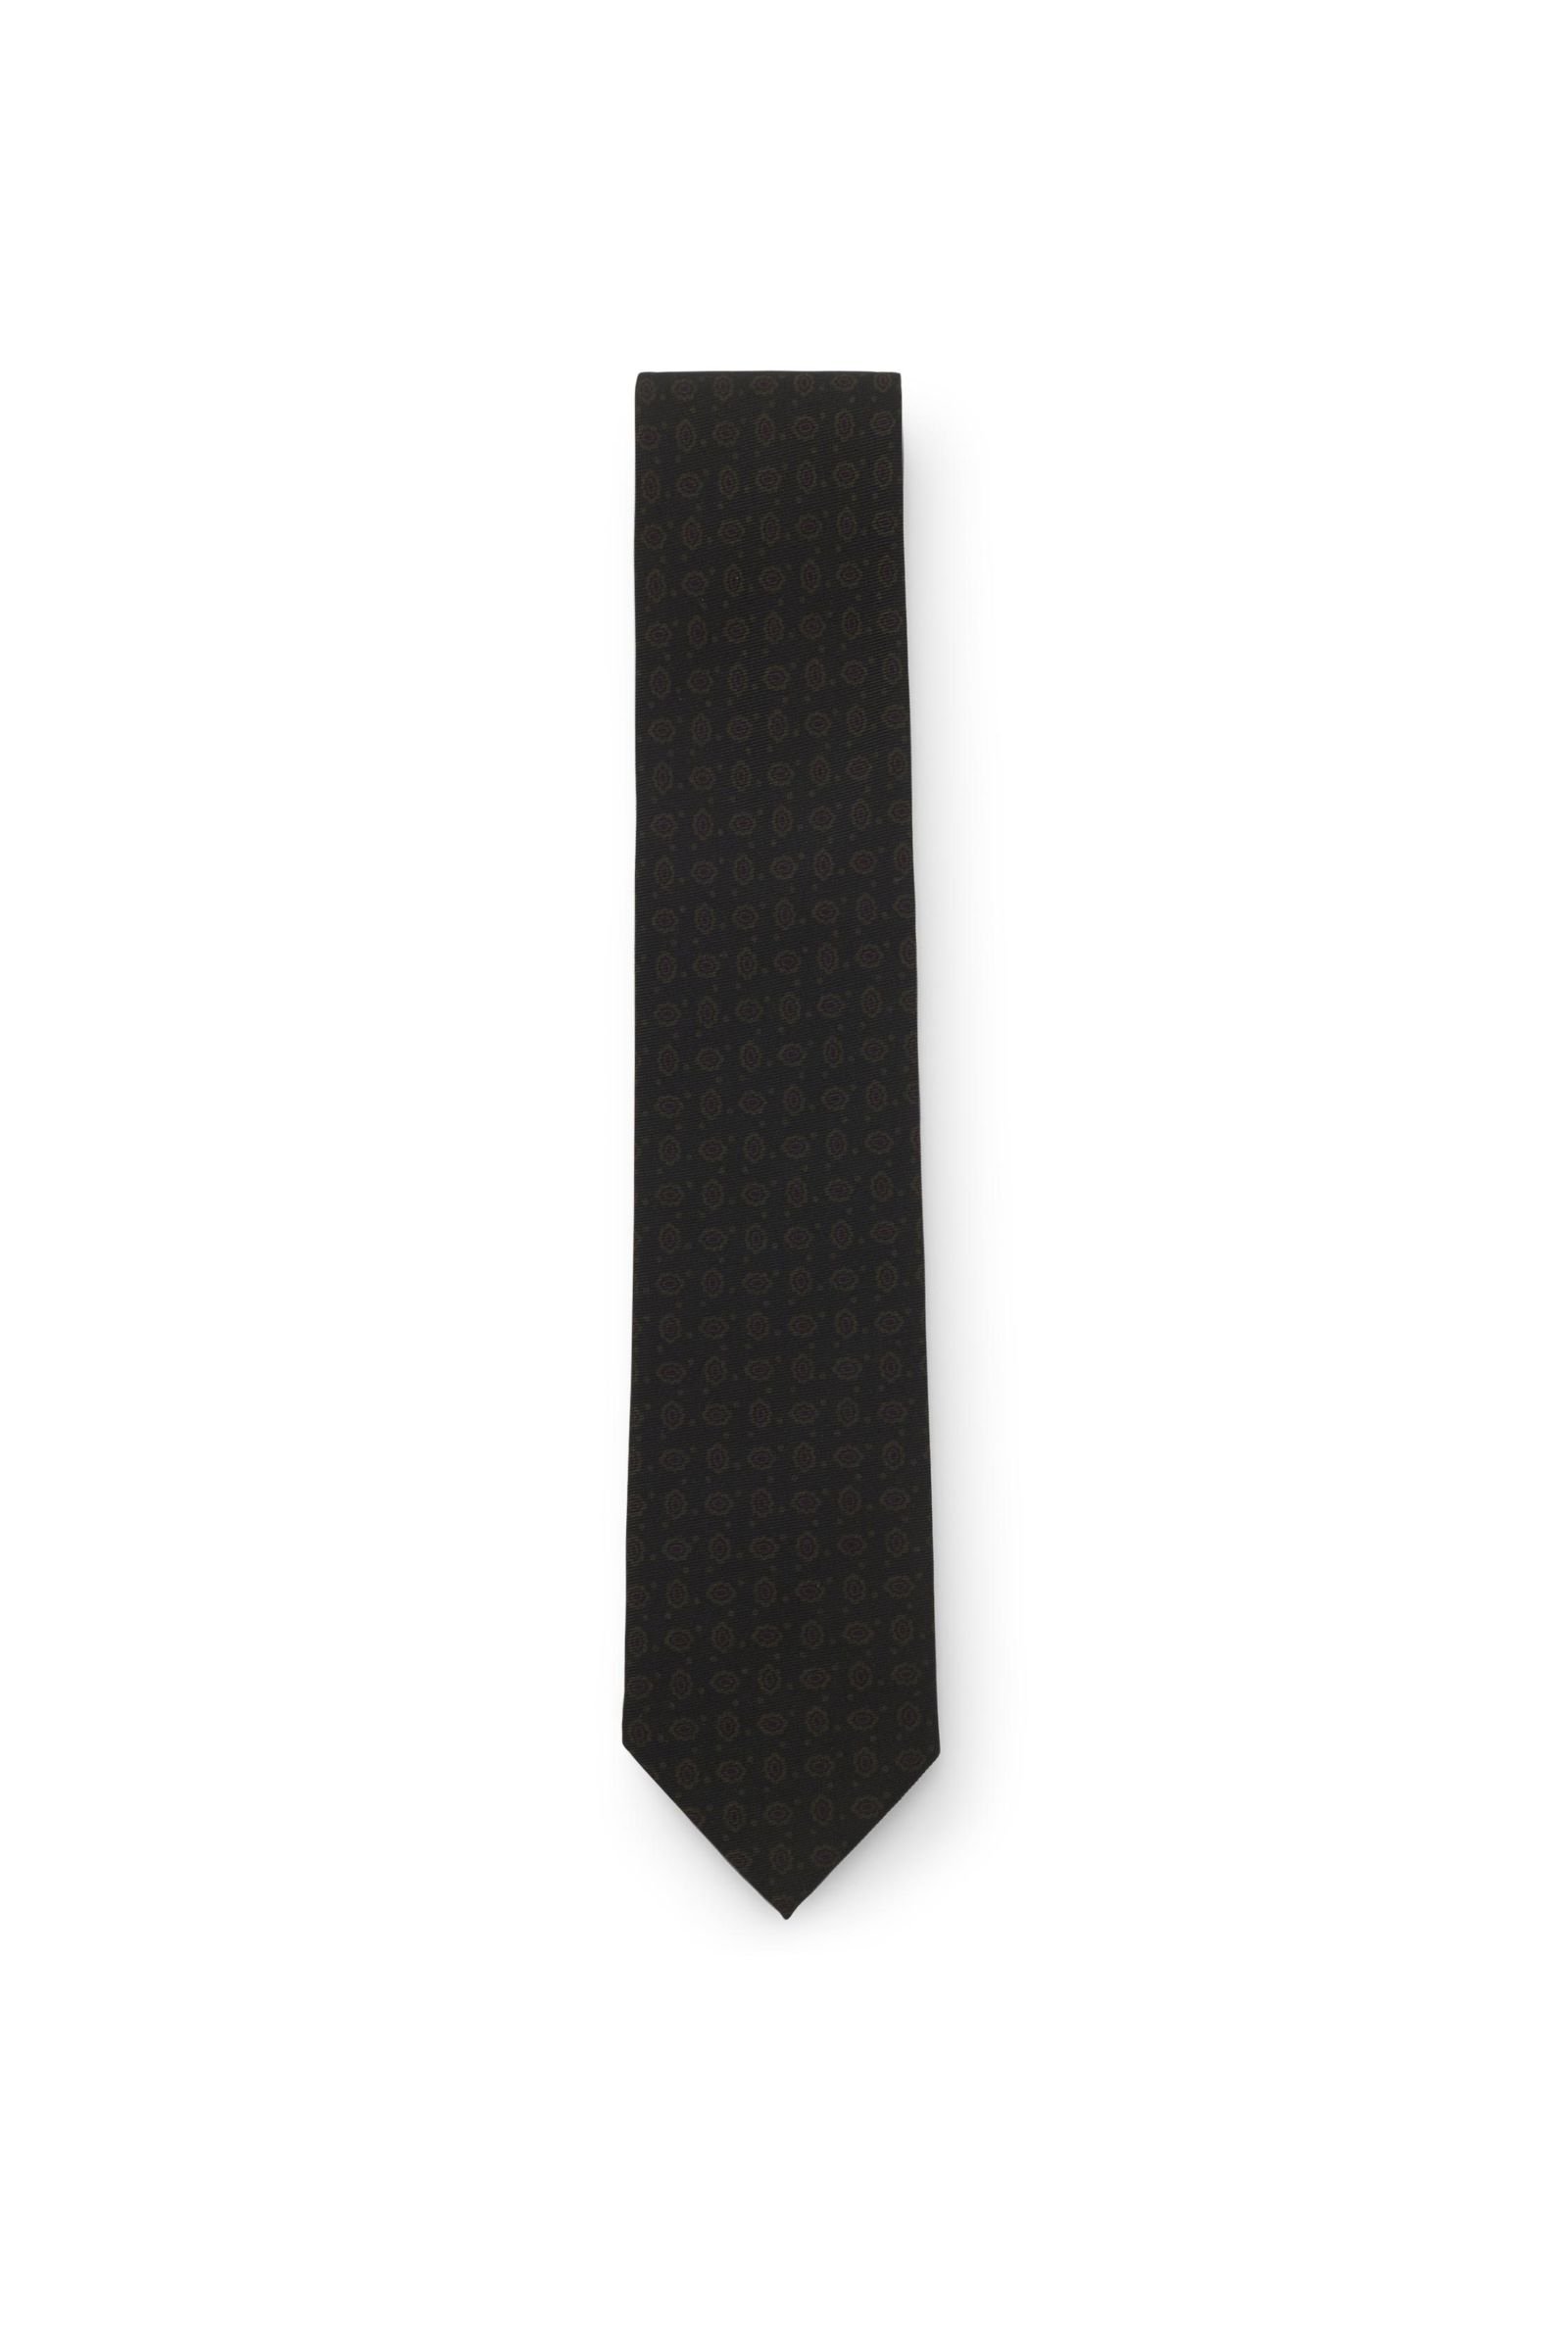 Silk tie dark olive patterned